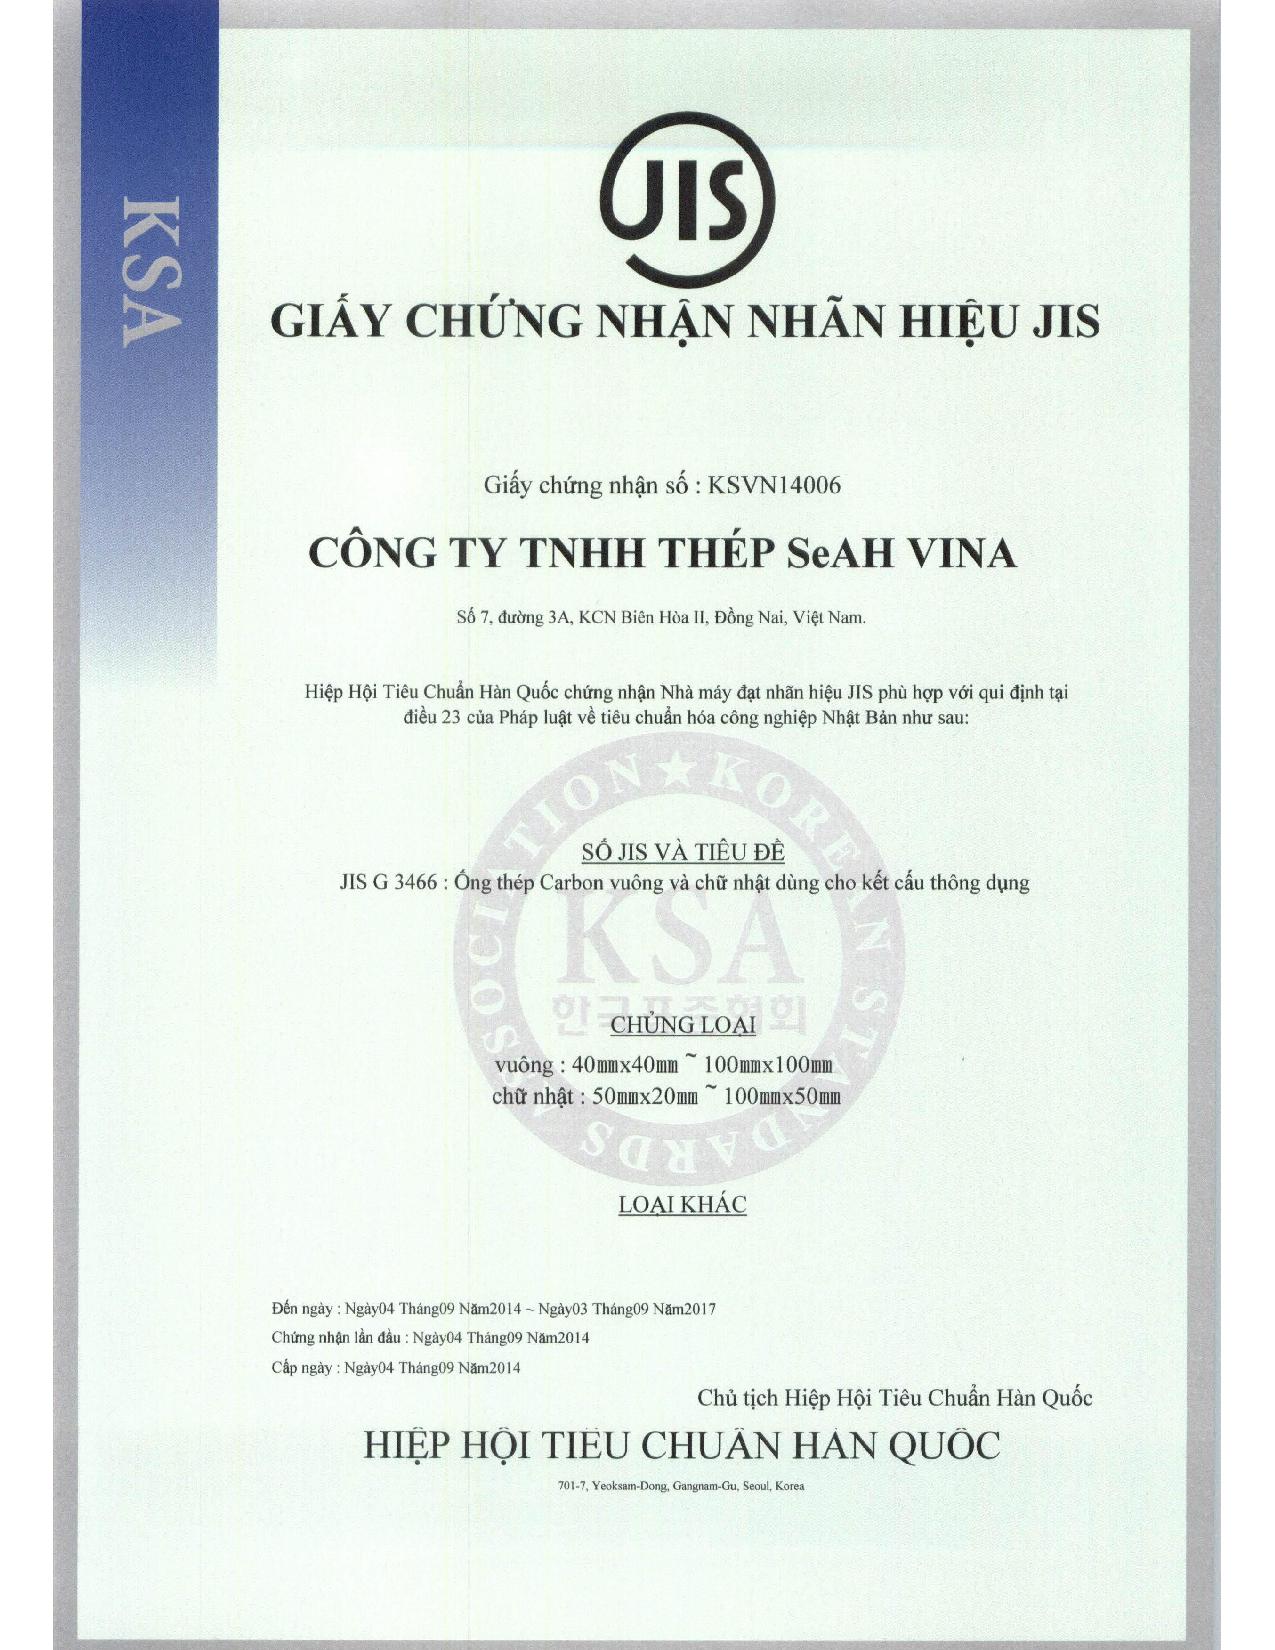 JIS Mark Certificate